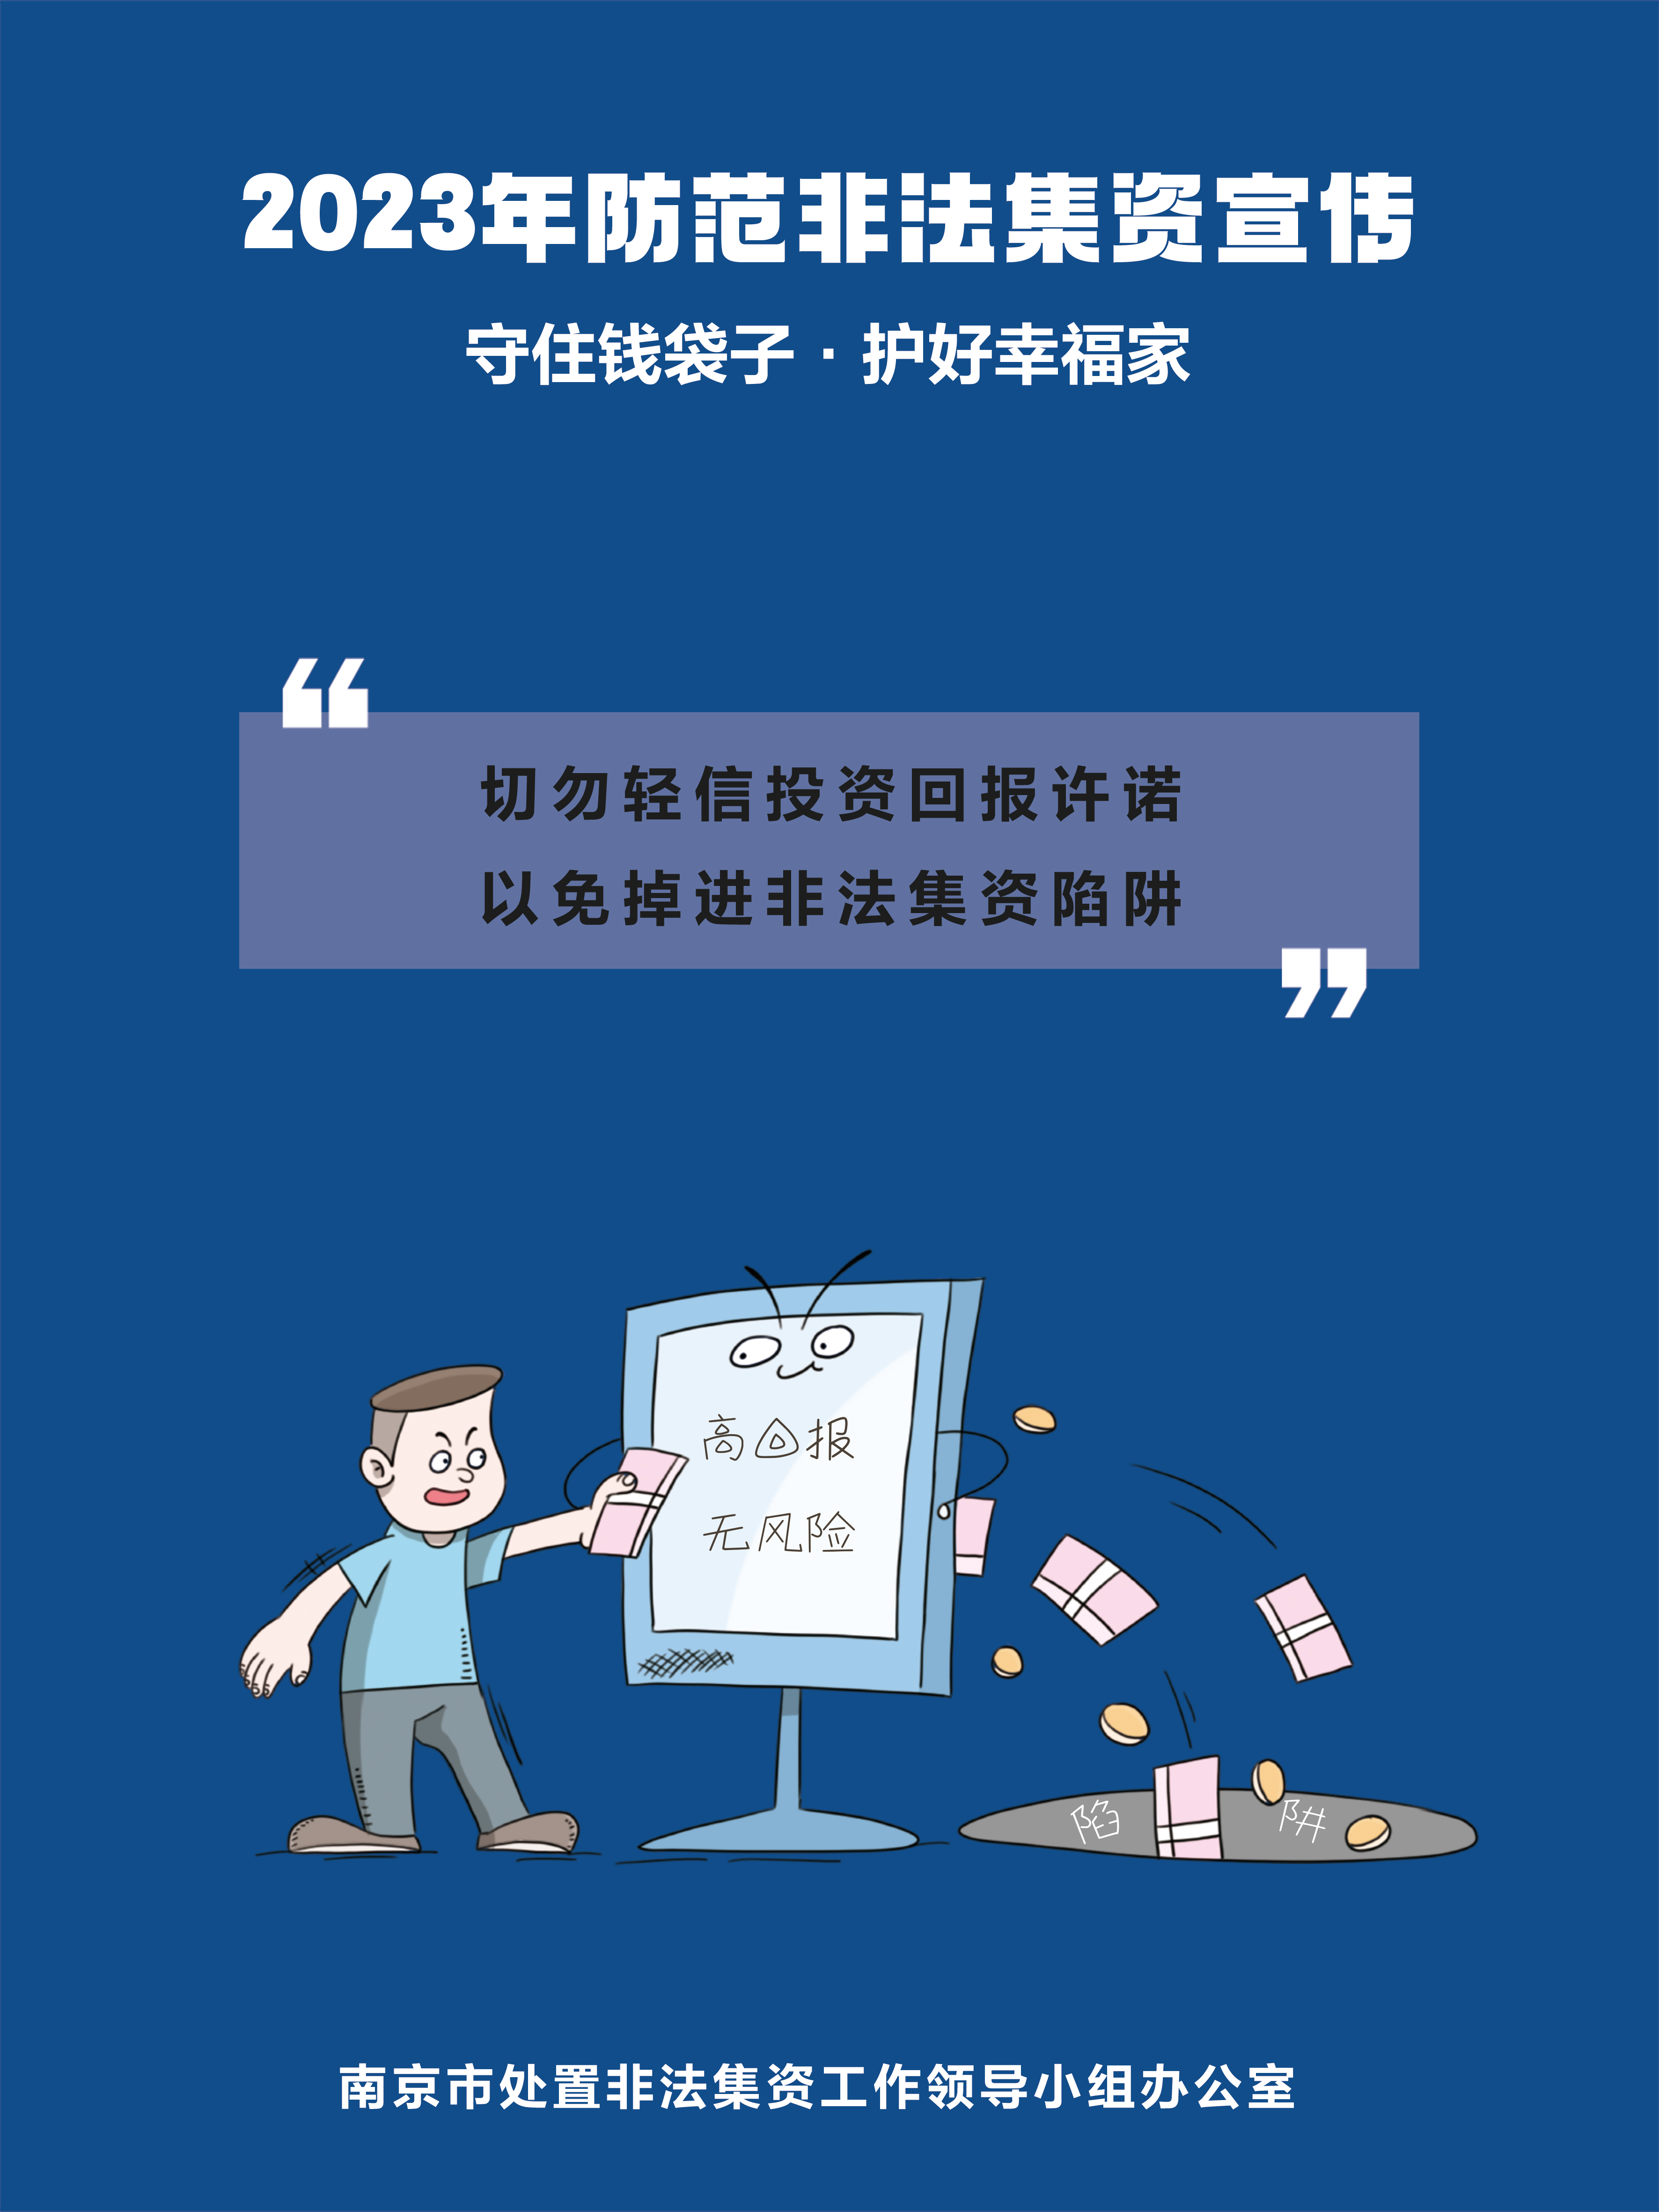 南京市防非宣传海报3